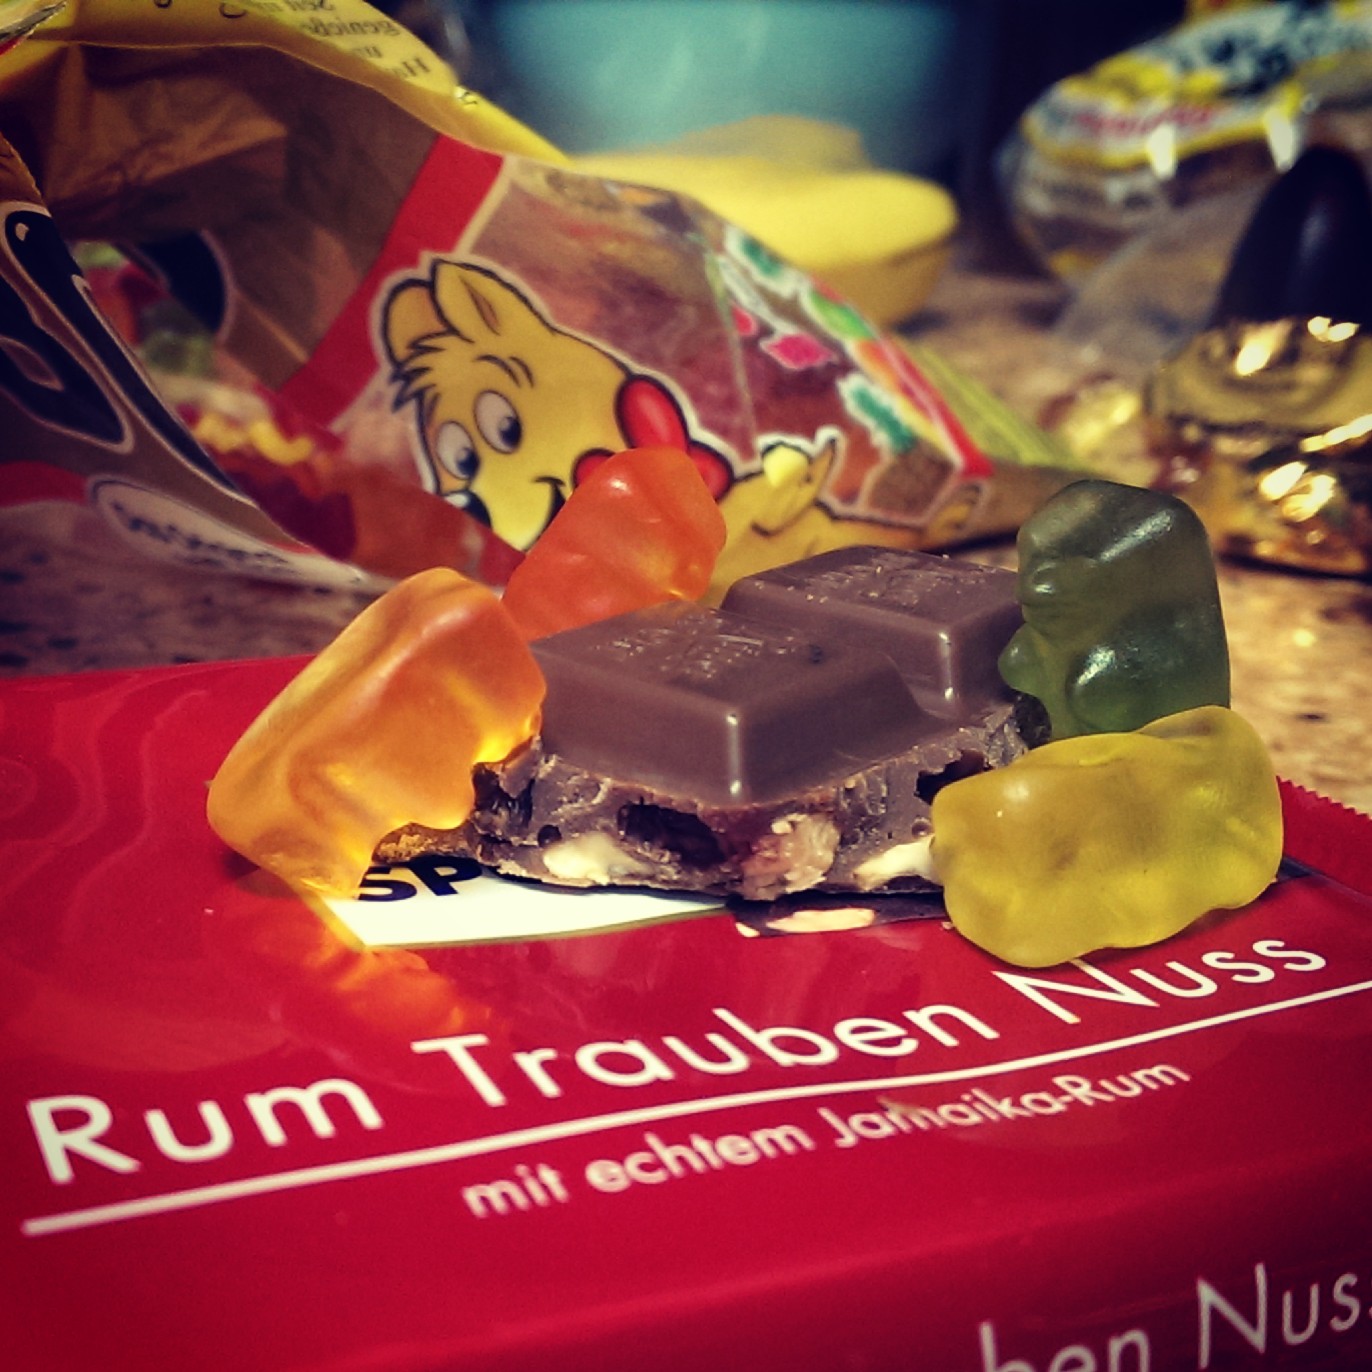 Gummy Bears and the Rum Trauben Nuss, lauramkimball